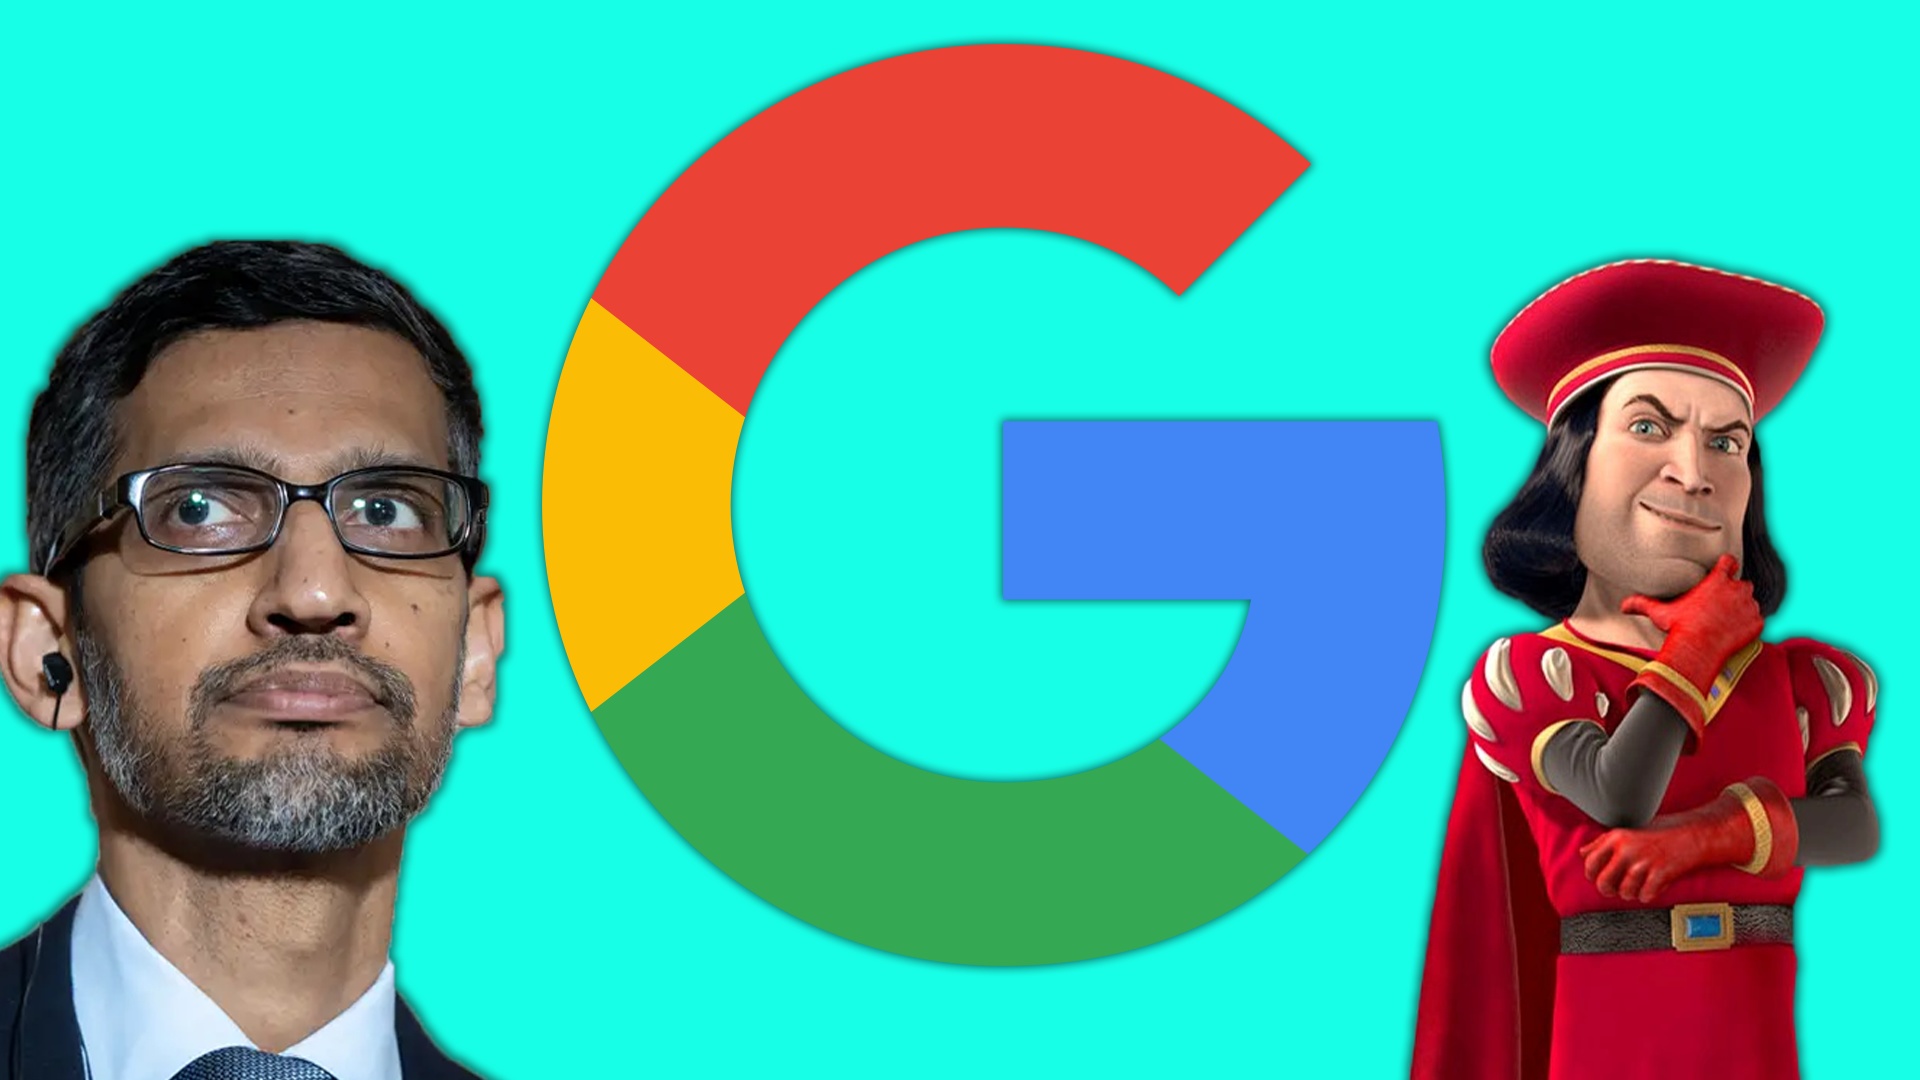 #Google Chef wird von seinen Mitarbeitern wegen Gehaltserhöhung mit Memes verspottet